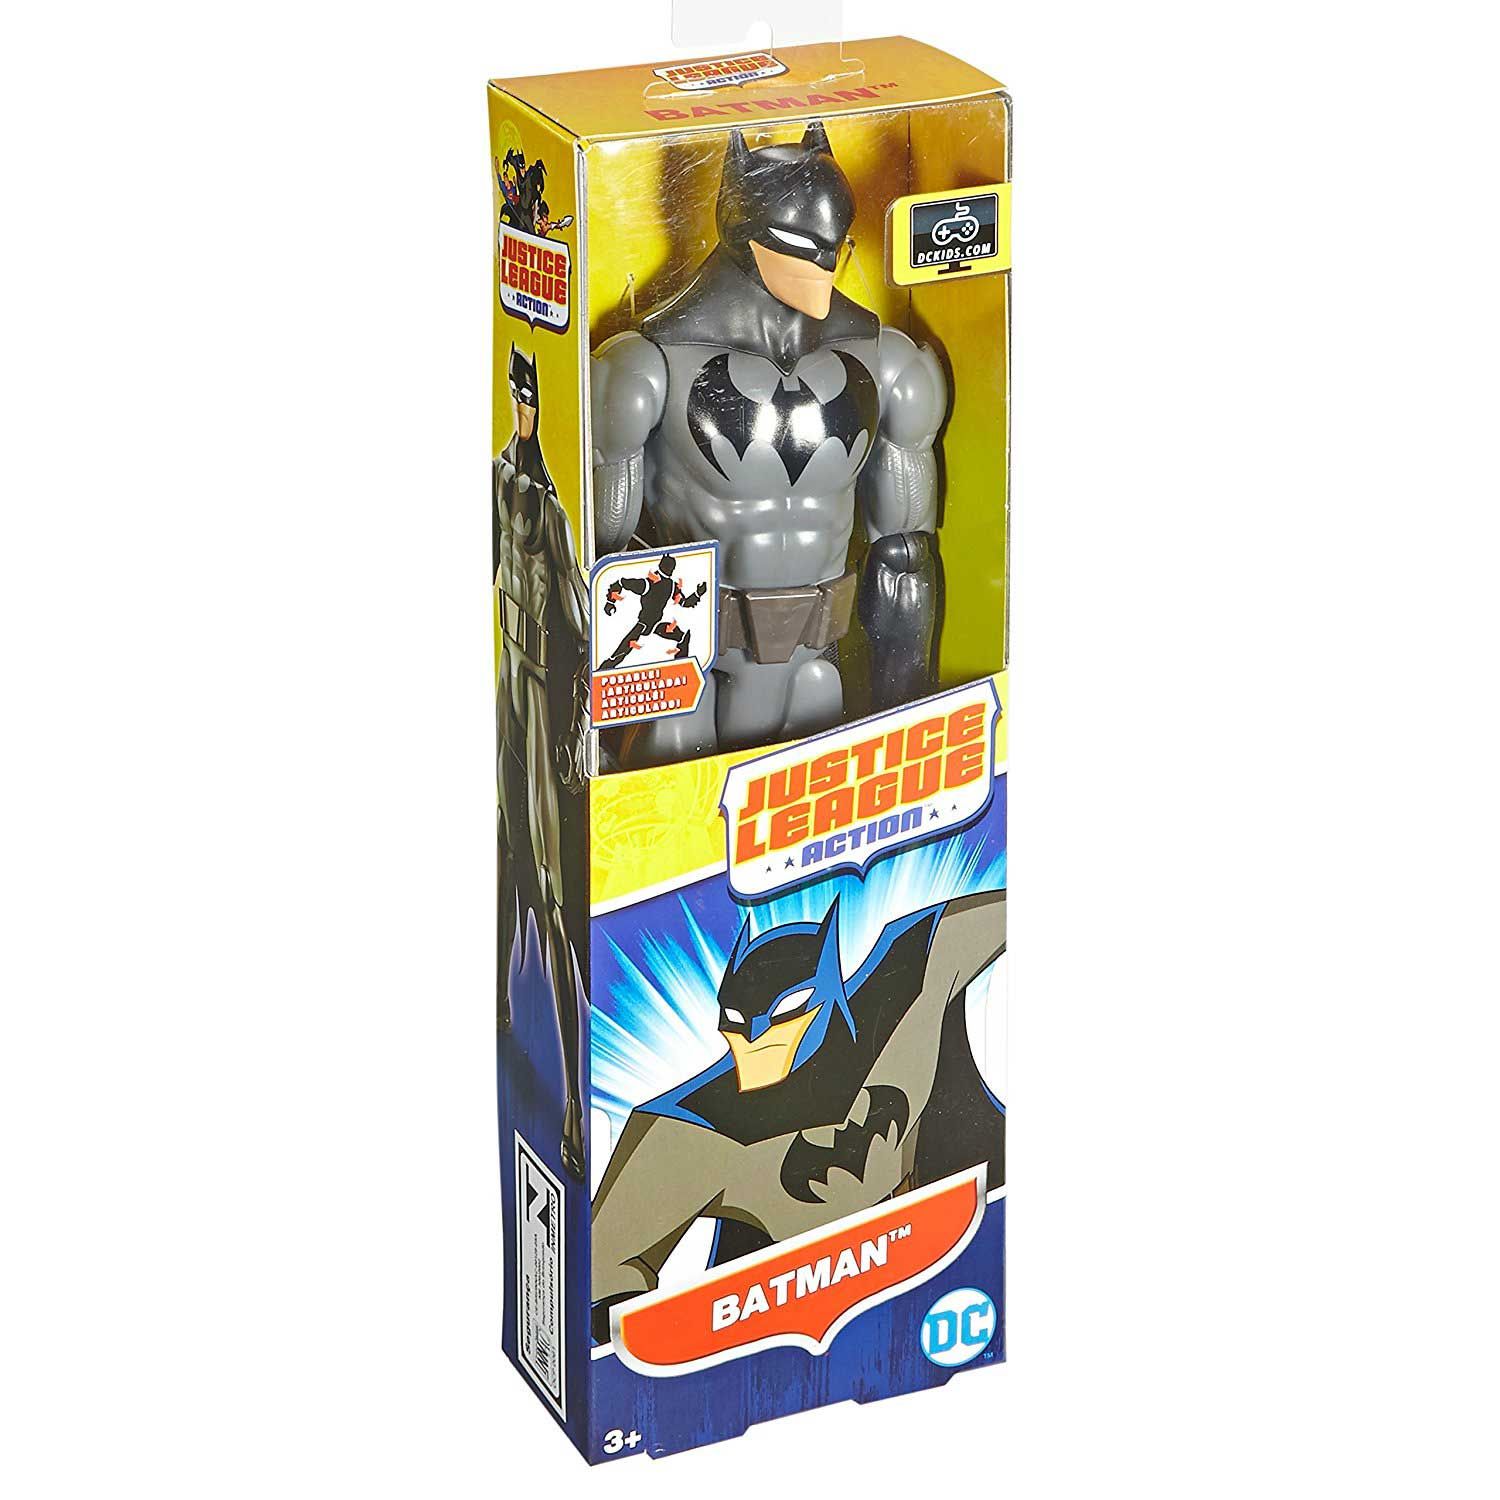 DC Comics Justice League Action Batman Figure 12"